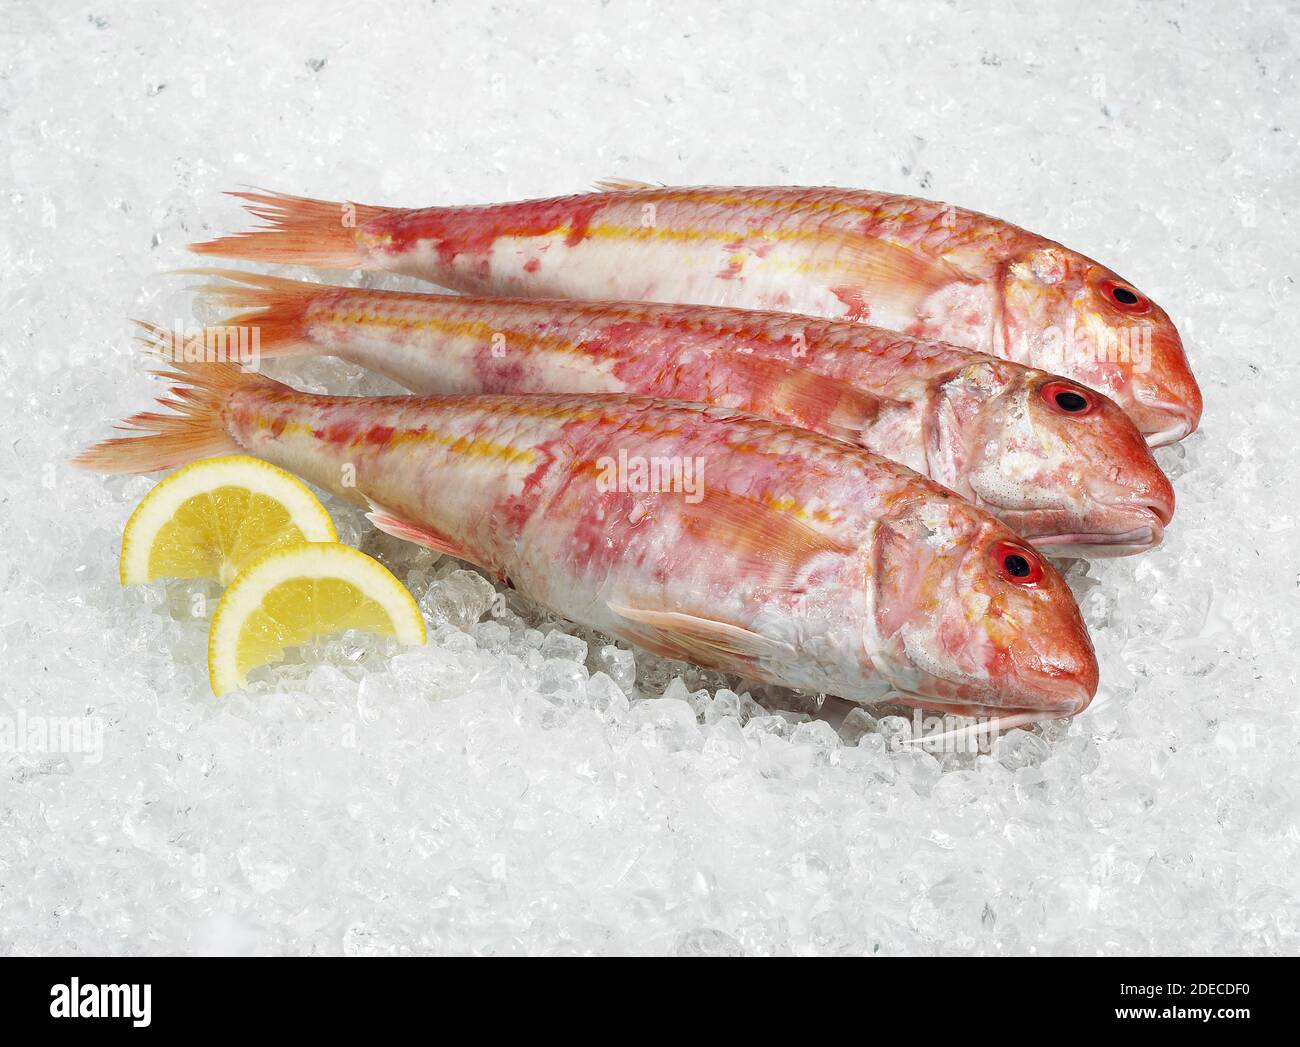 Gurnard, mullus surmuletus, Fresh Fish on Ice with Yellow Lemon Stock Photo